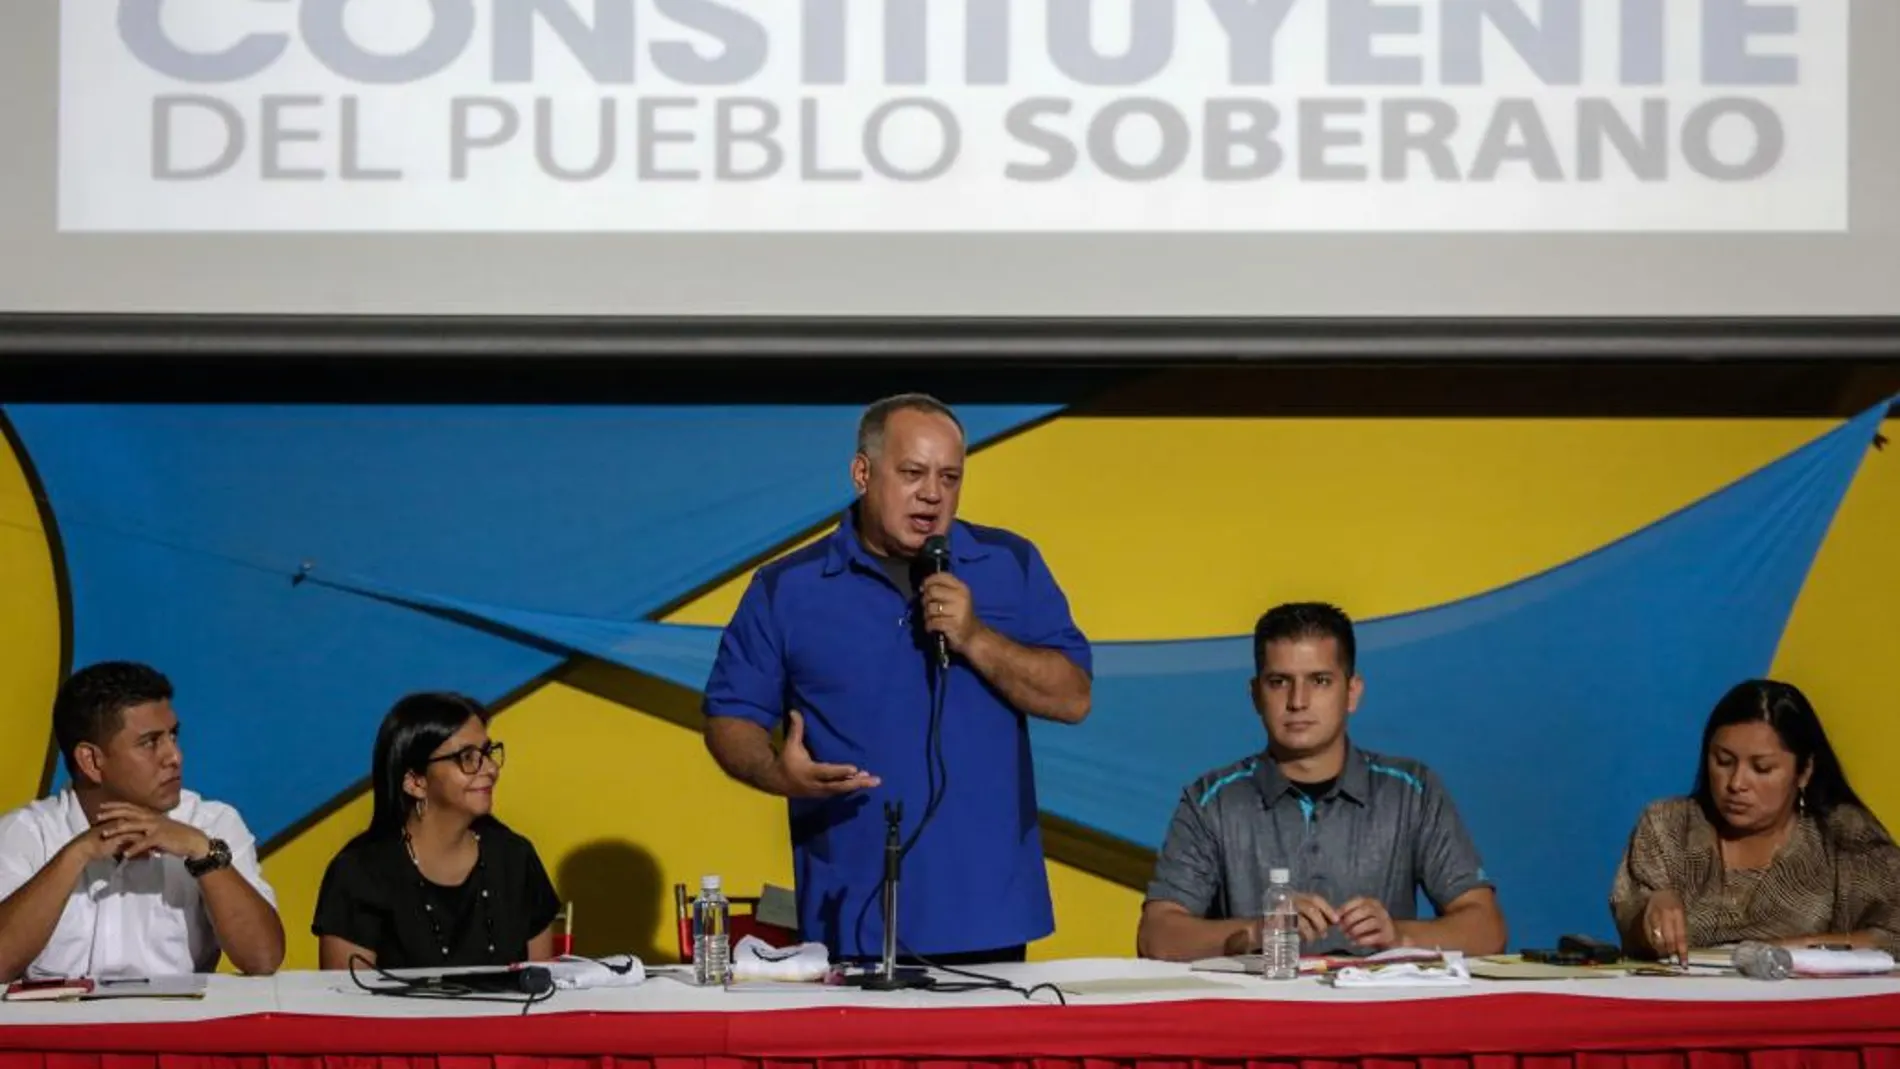 El miembro de la Asamblea Nacional Constituyente Diosdado Cabello habla durante un debate con simpatizantes hoy en Caracas